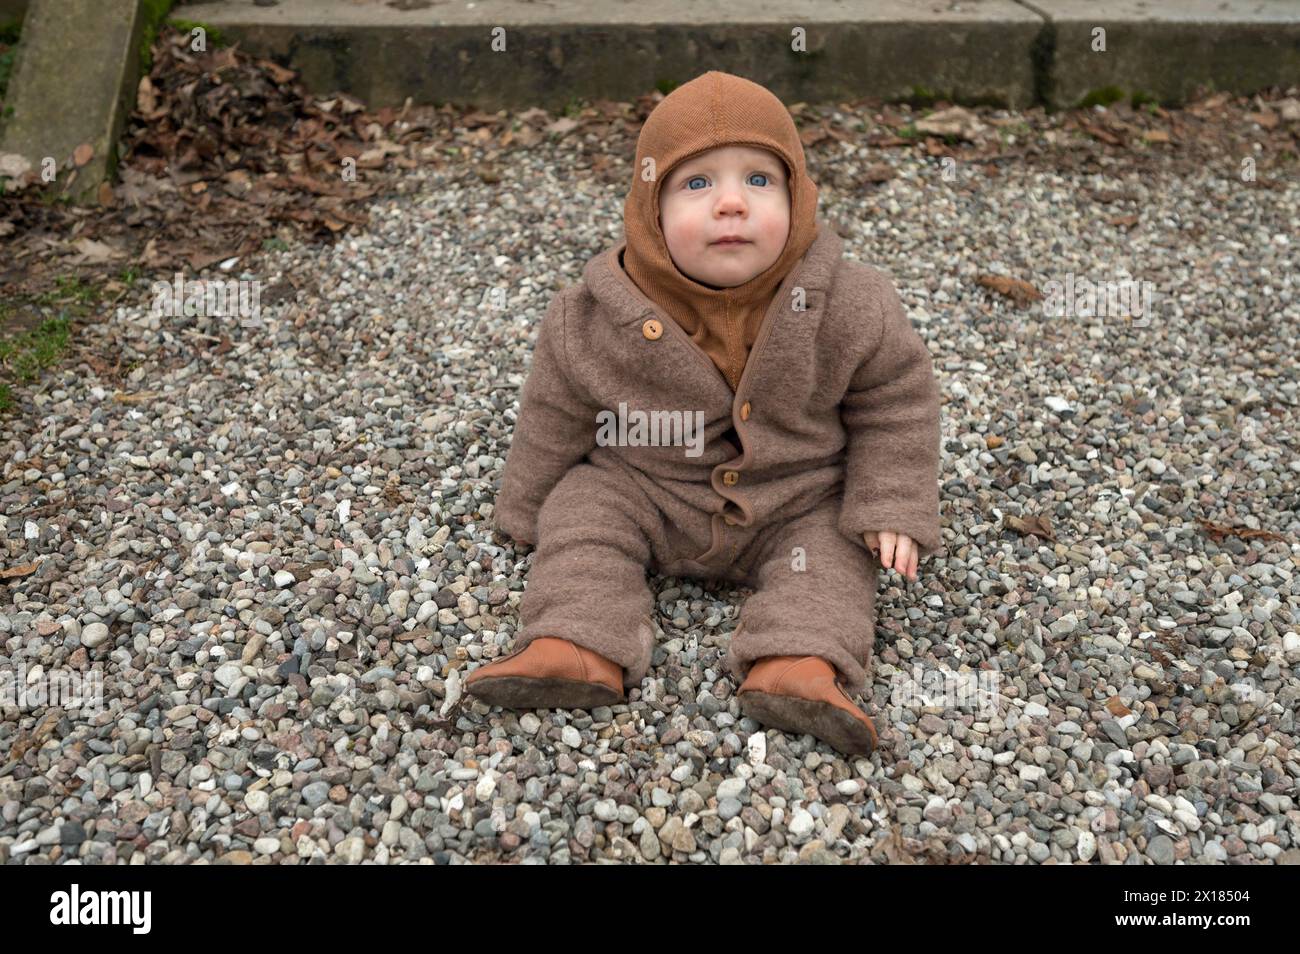 Kleines Kind, 8 Monate, warm eingewickelt, auf dem Kies sitzend, Mecklenburg-Vorpommern, Deutschland Stockfoto